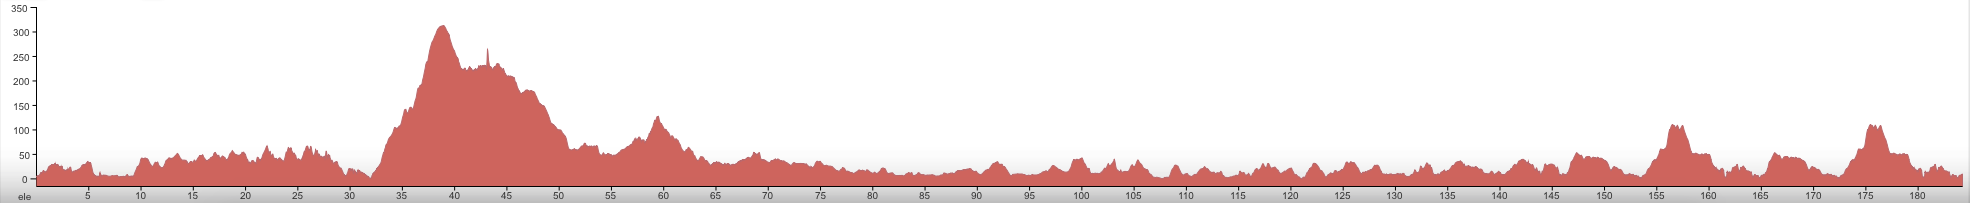 Tour des Fjords 2015 etape 5 - profil